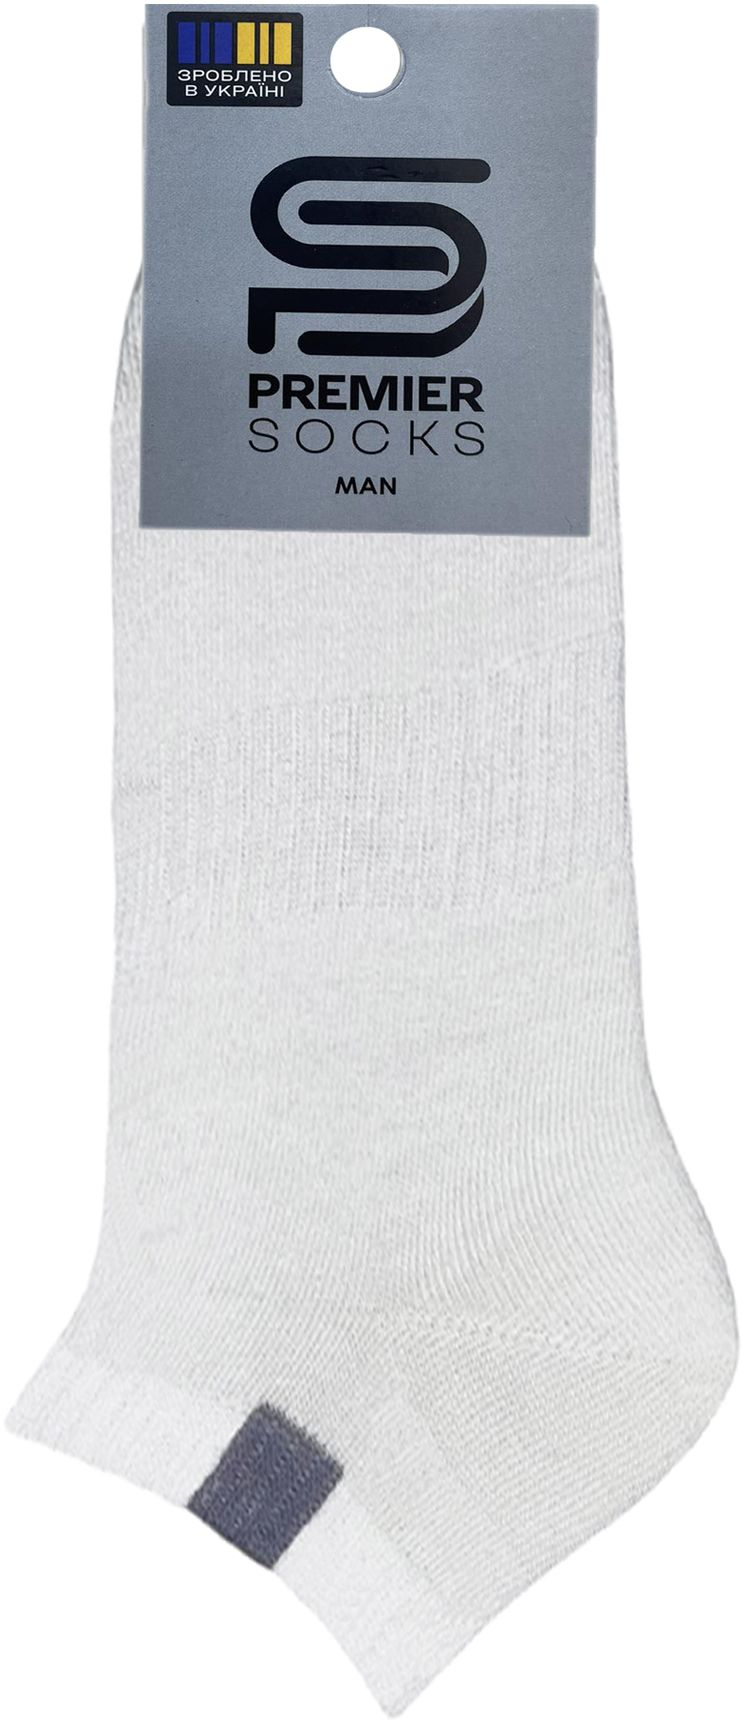 Шкарпетки чоловічі Premier Socks 42-43 1 пара білі (4820163318349)фото2